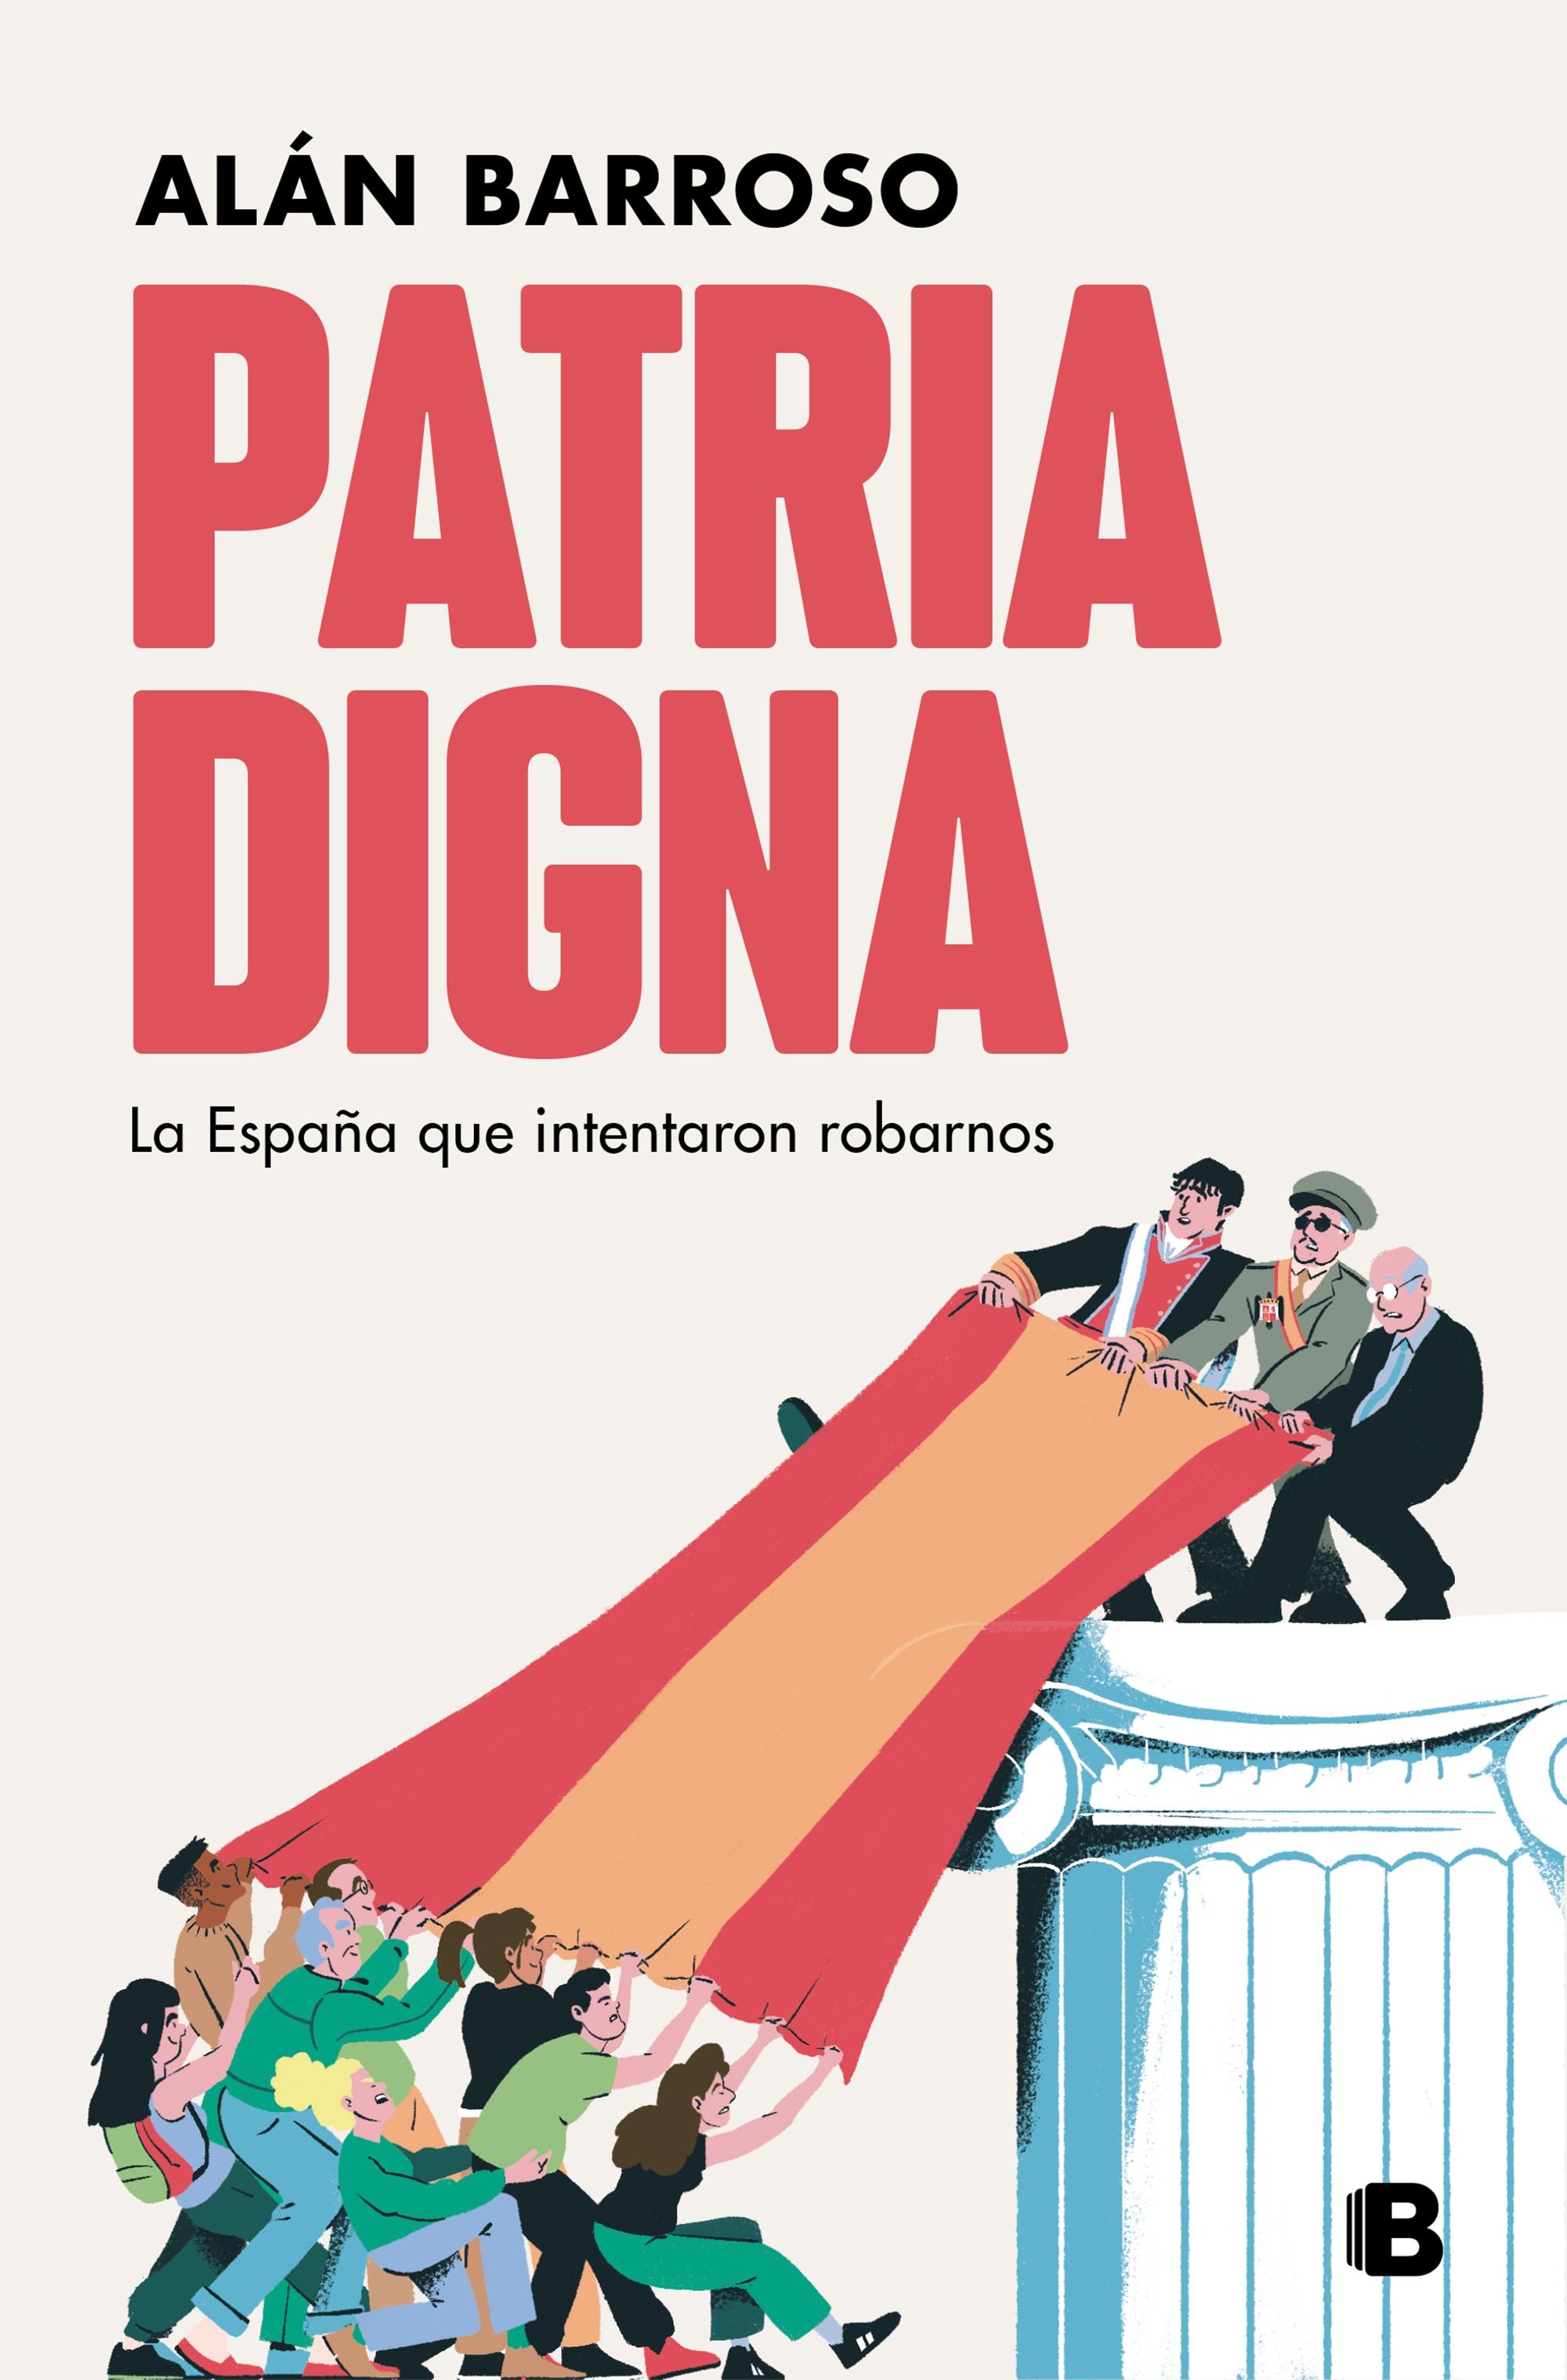 Patria Digna "La España que Intentaron Robarnos". 